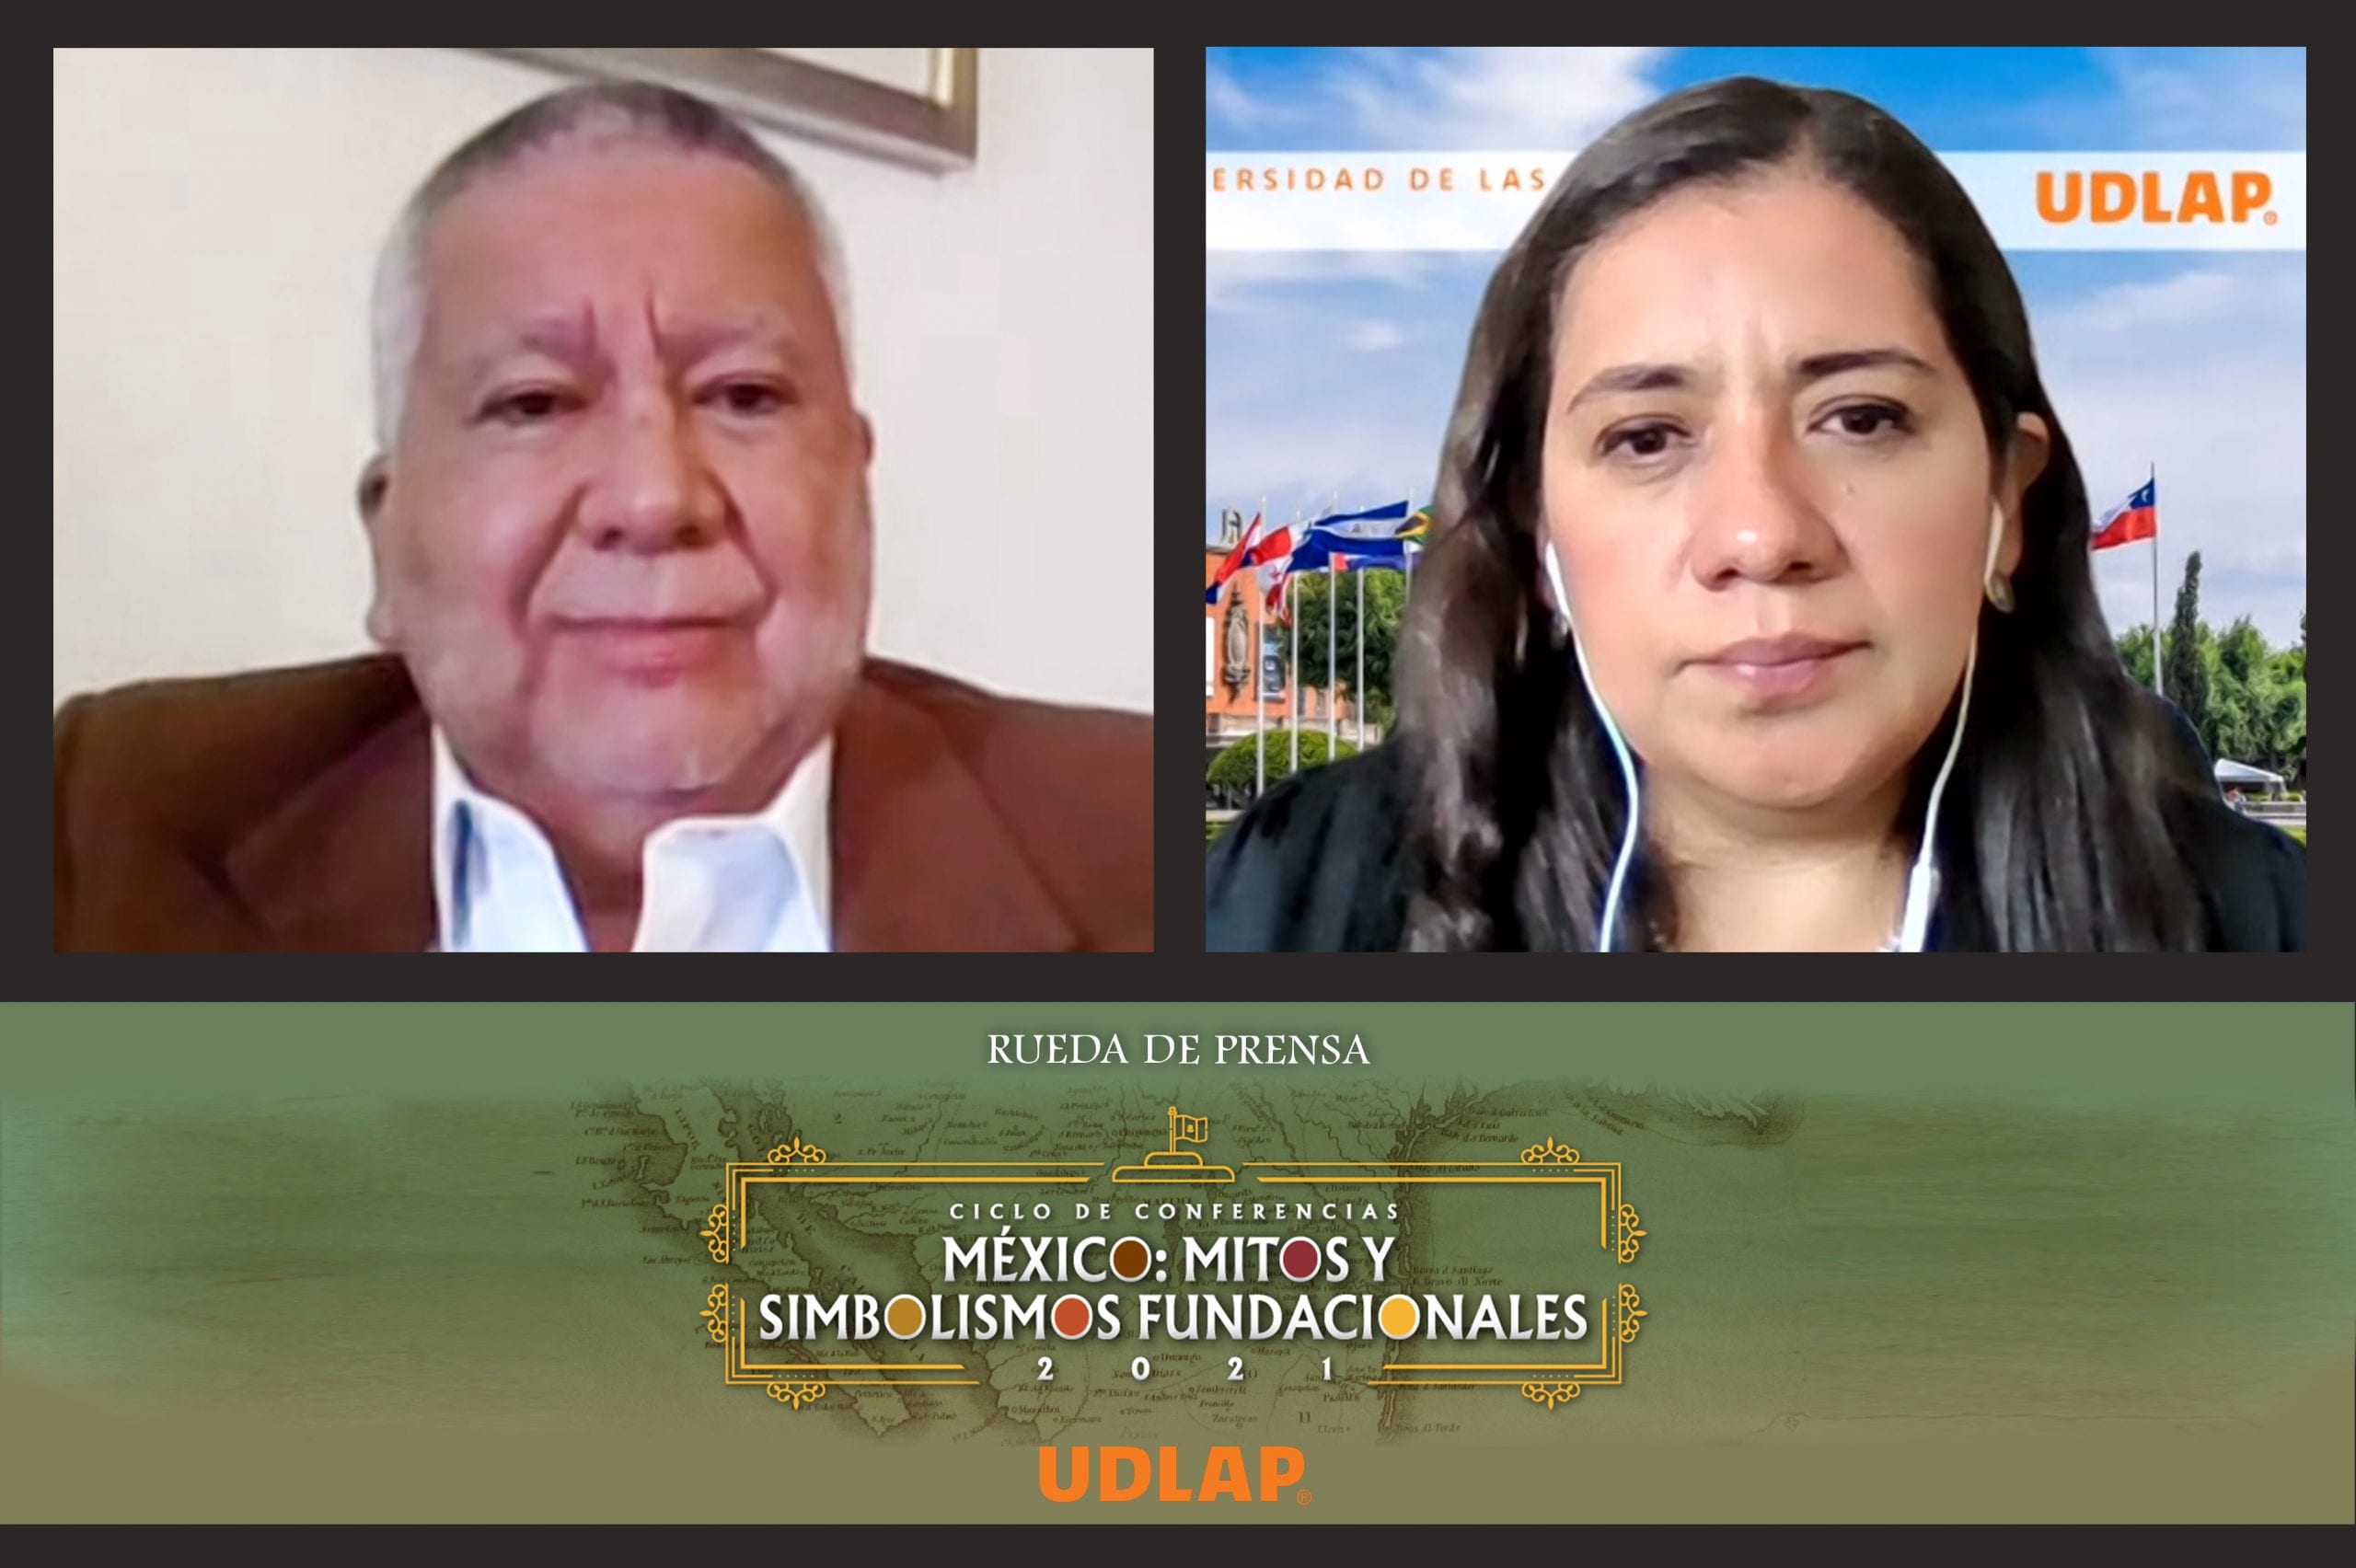 La UDLAP presenta el ciclo de conferencias “México: mitos y simbolismos fundacionales”